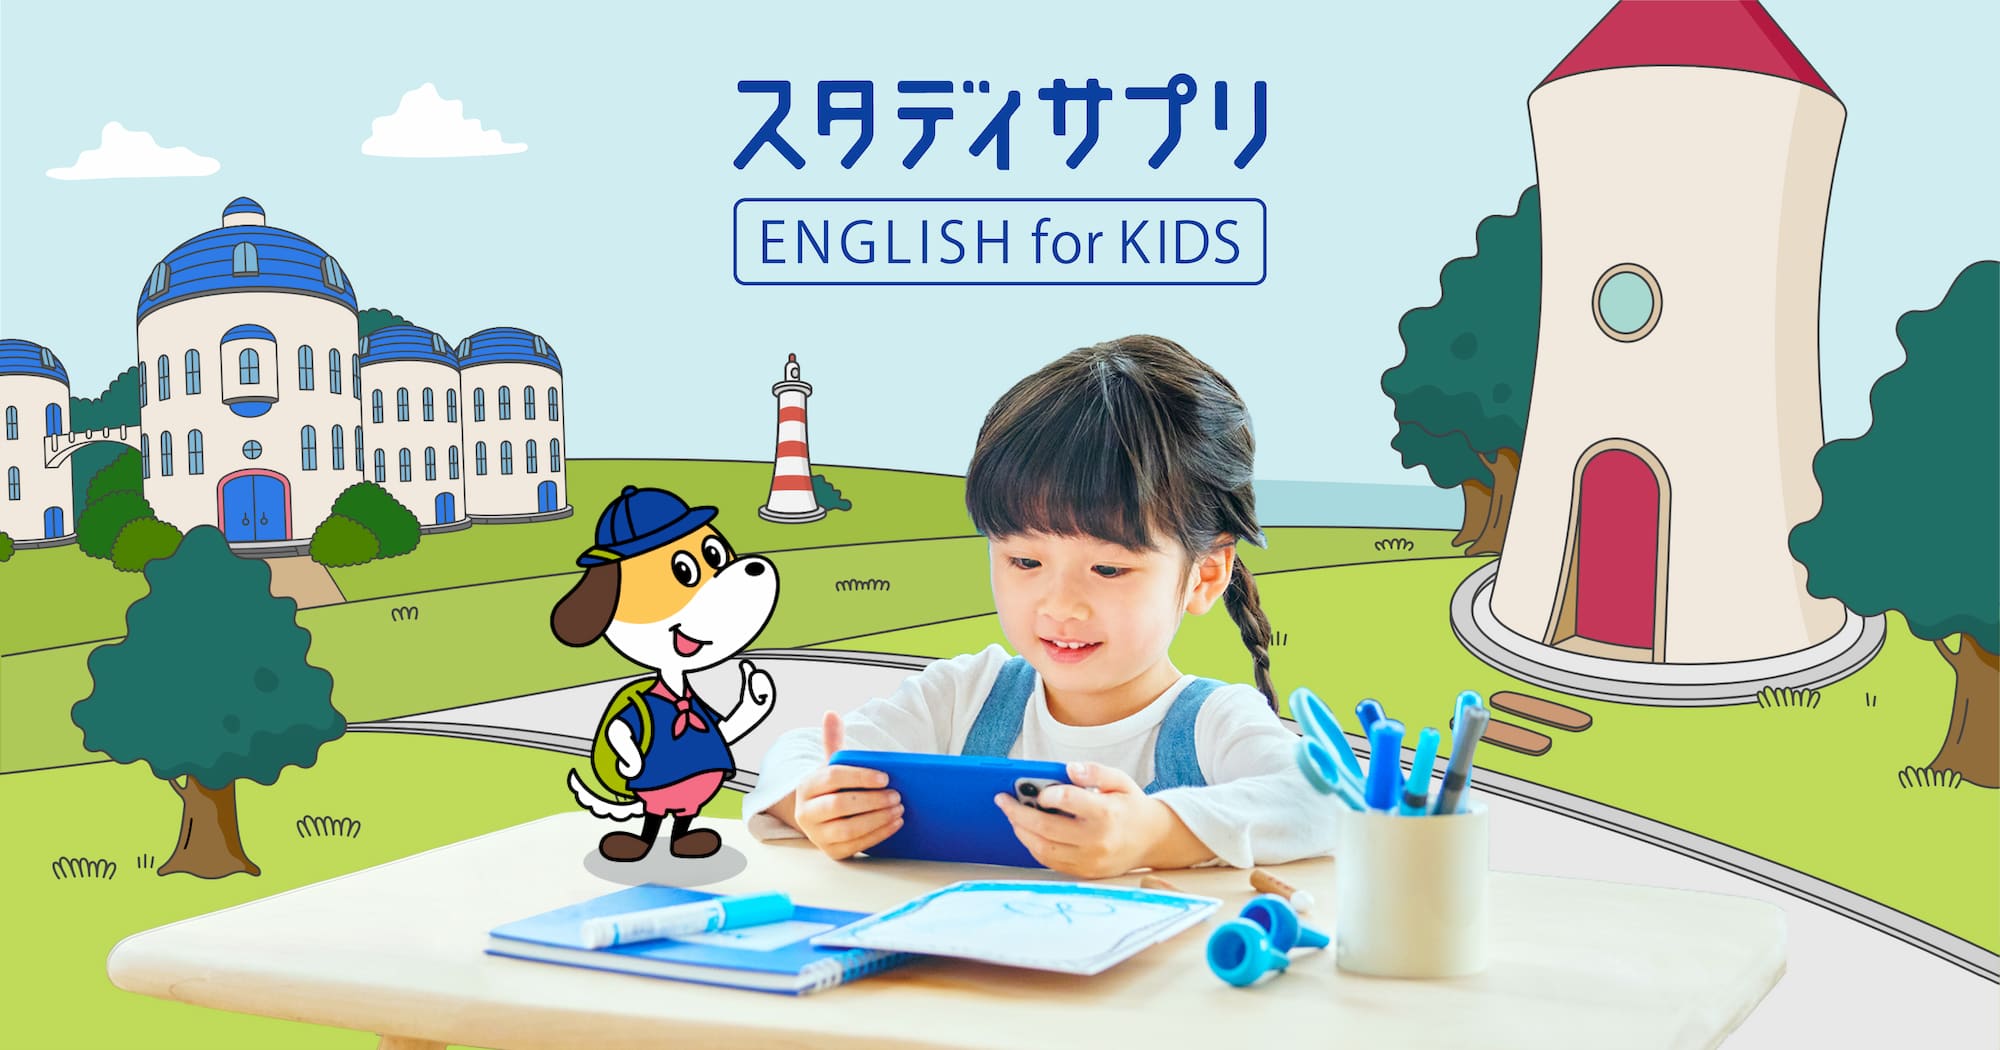 『スタディサプリ ENGLISH for KIDS』